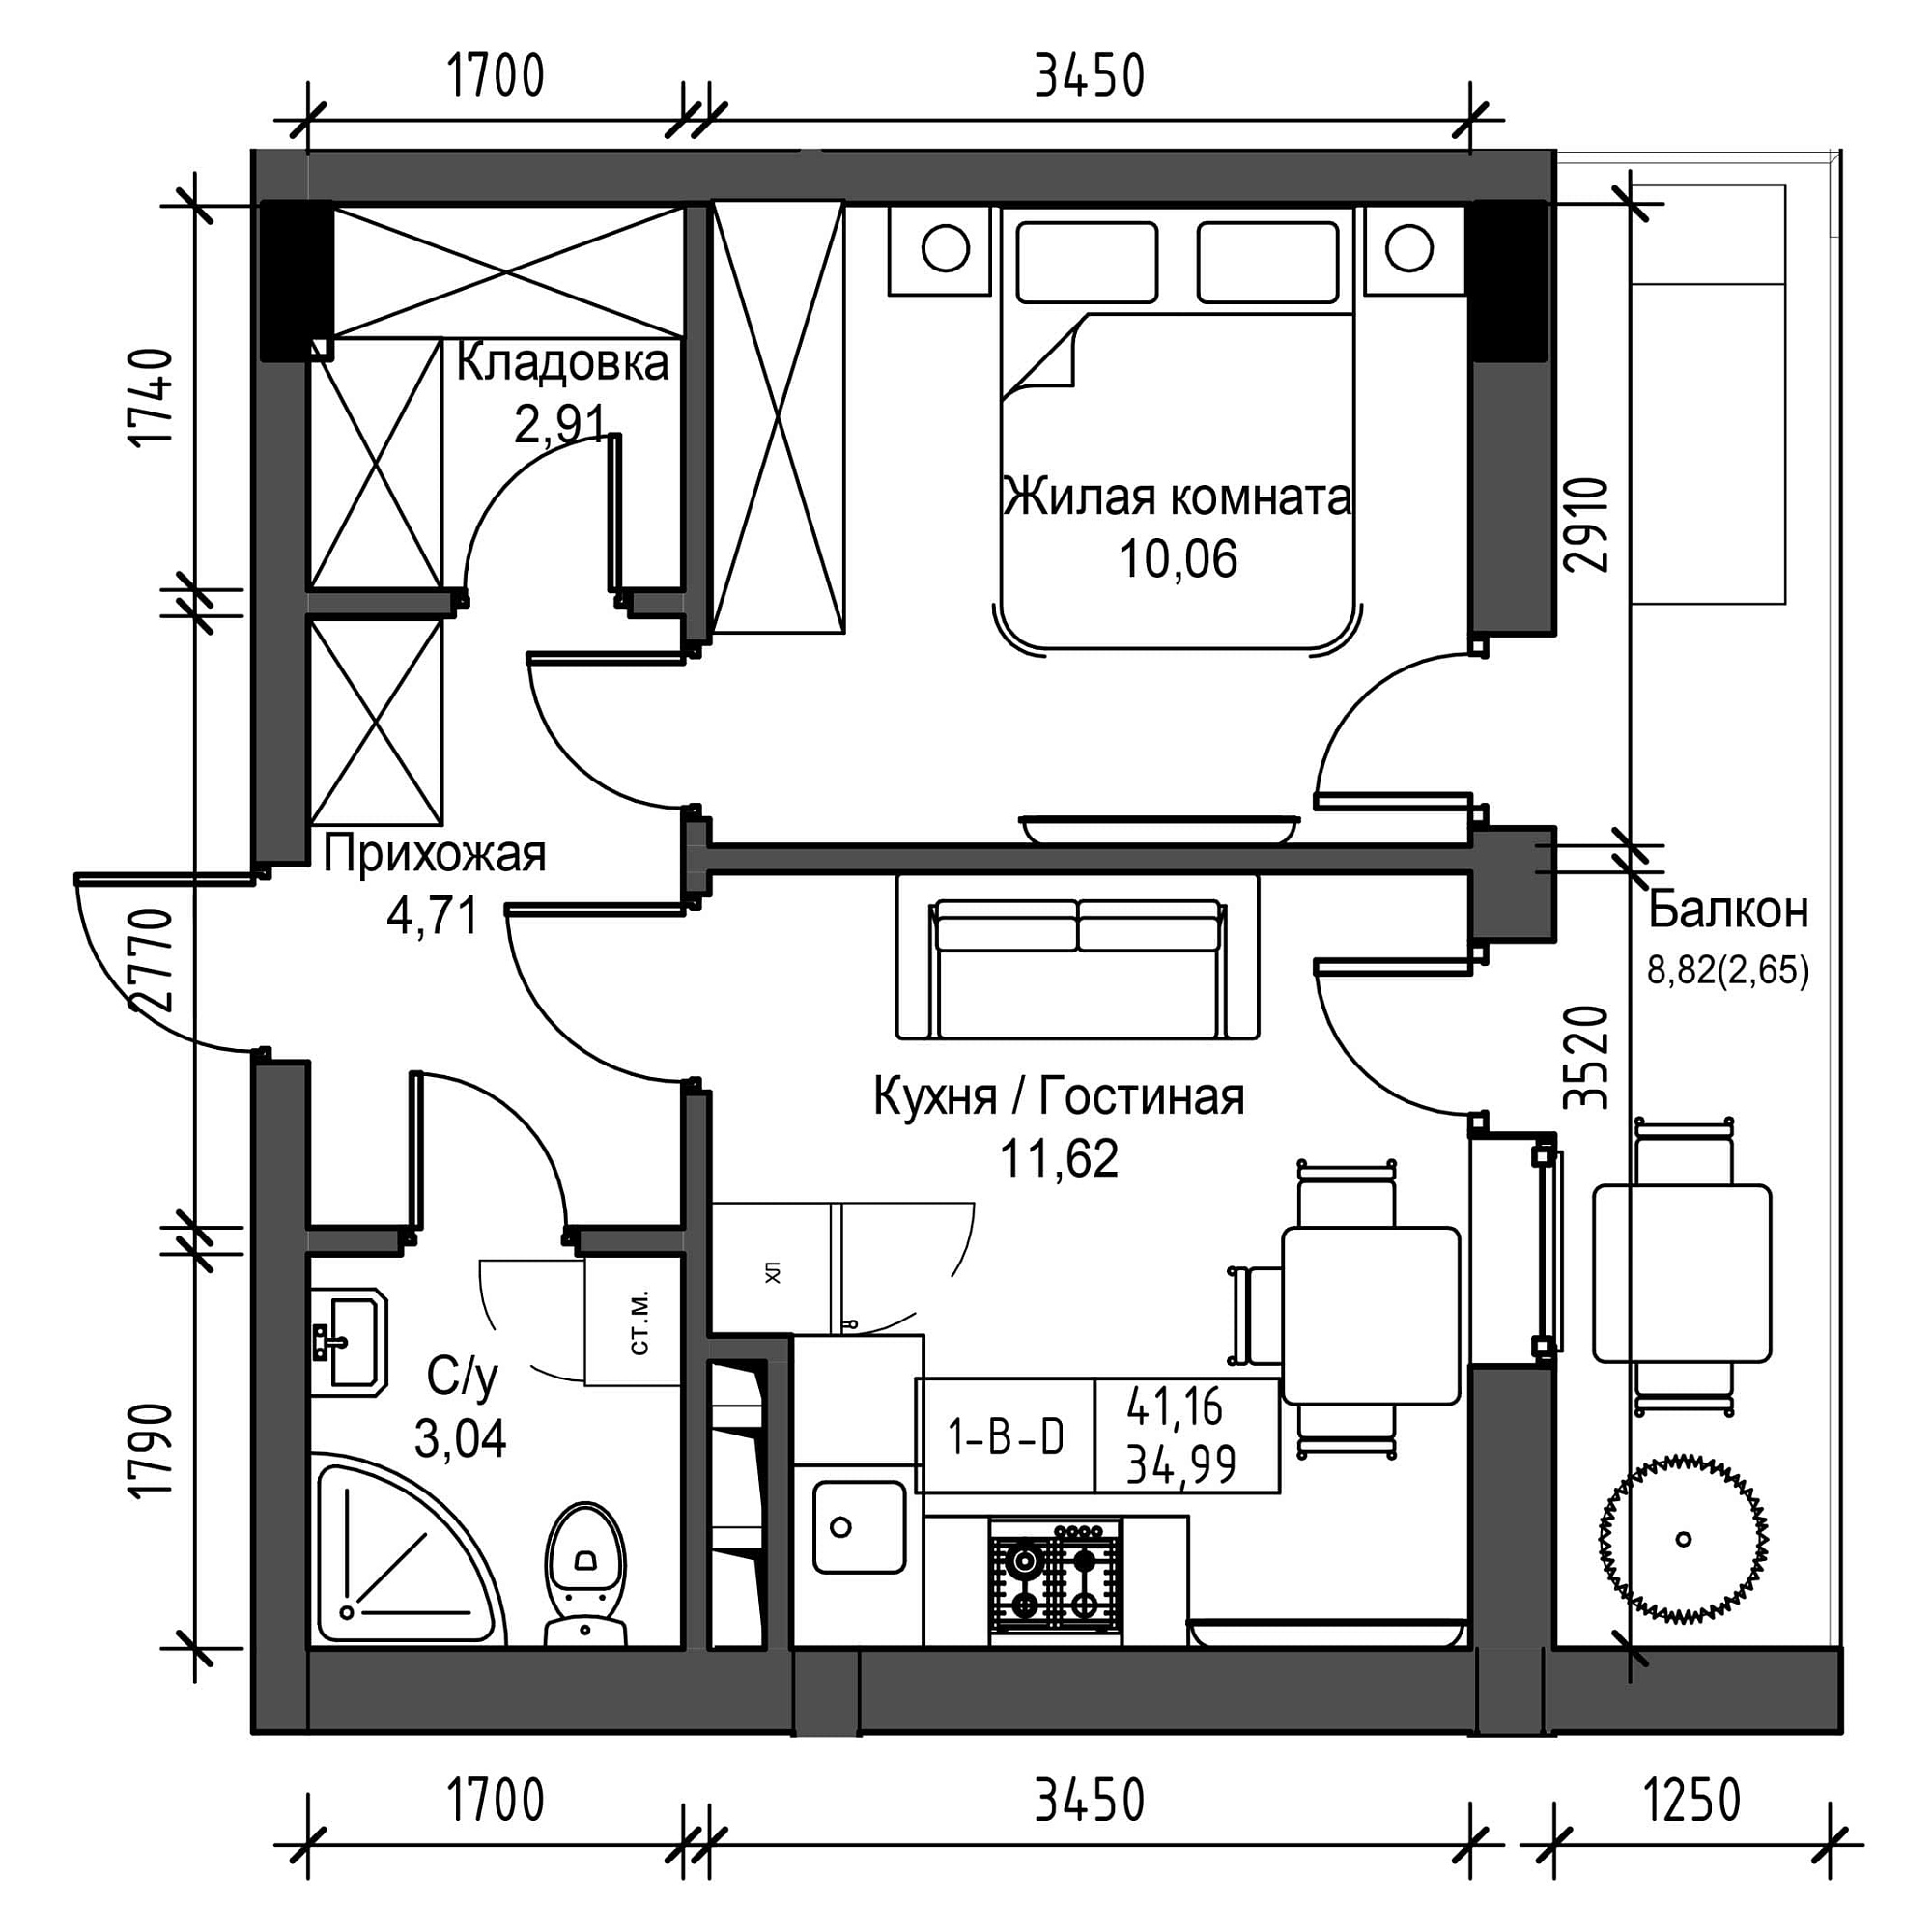 Планировка 1-к квартира площей 34.99м2, UM-001-07/0024.